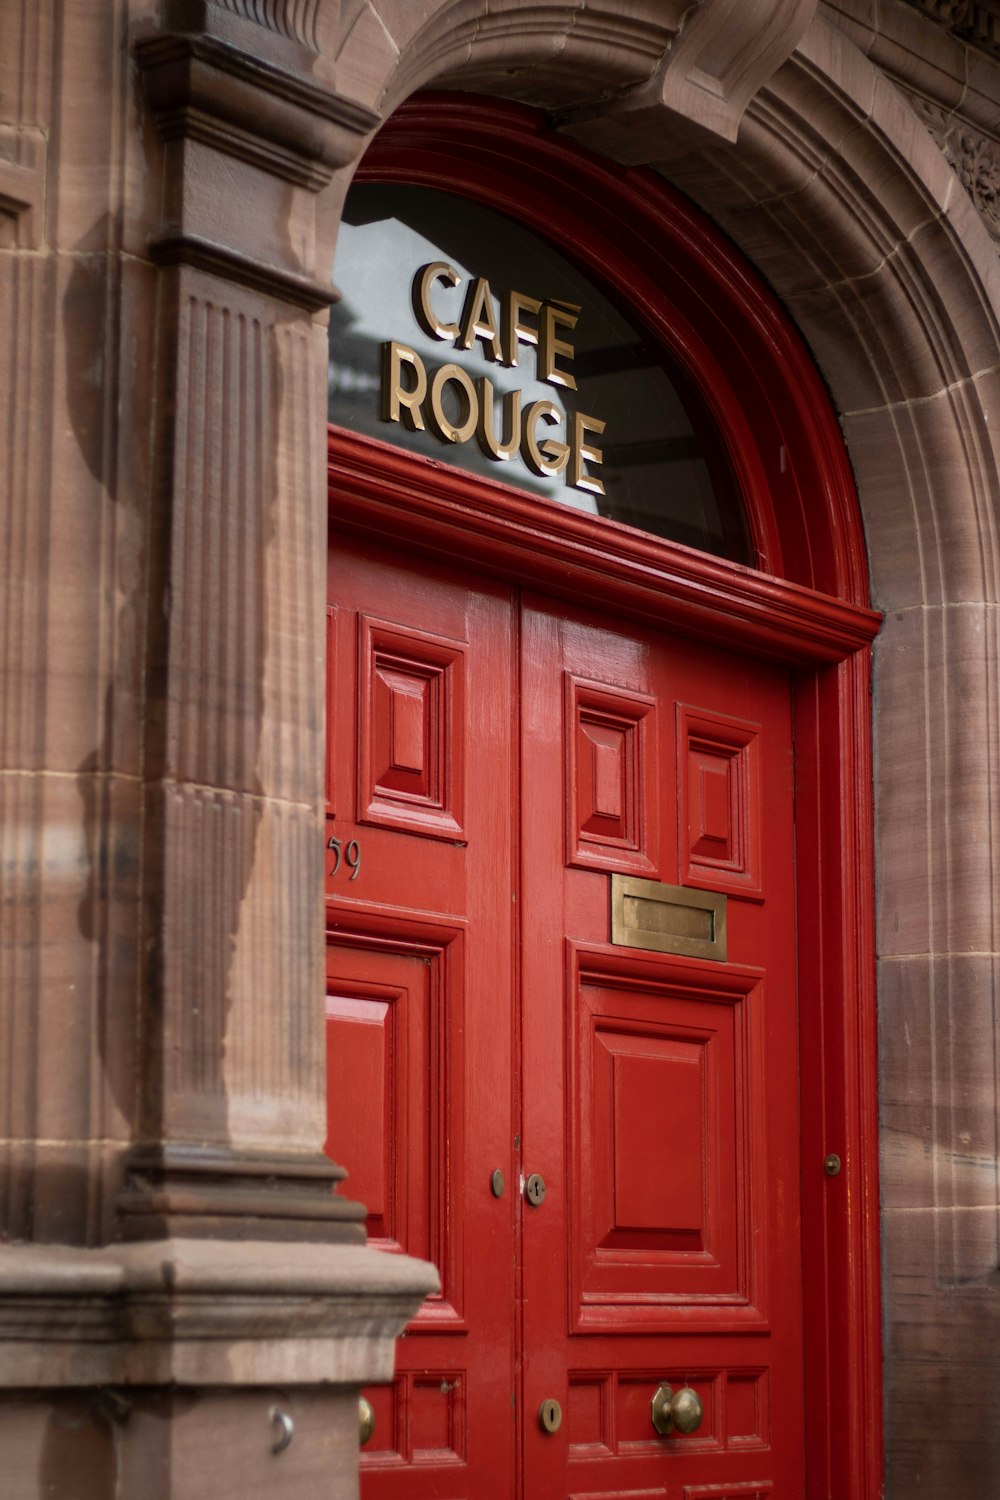 Une porte rouge avec une enseigne qui dit Café Roue